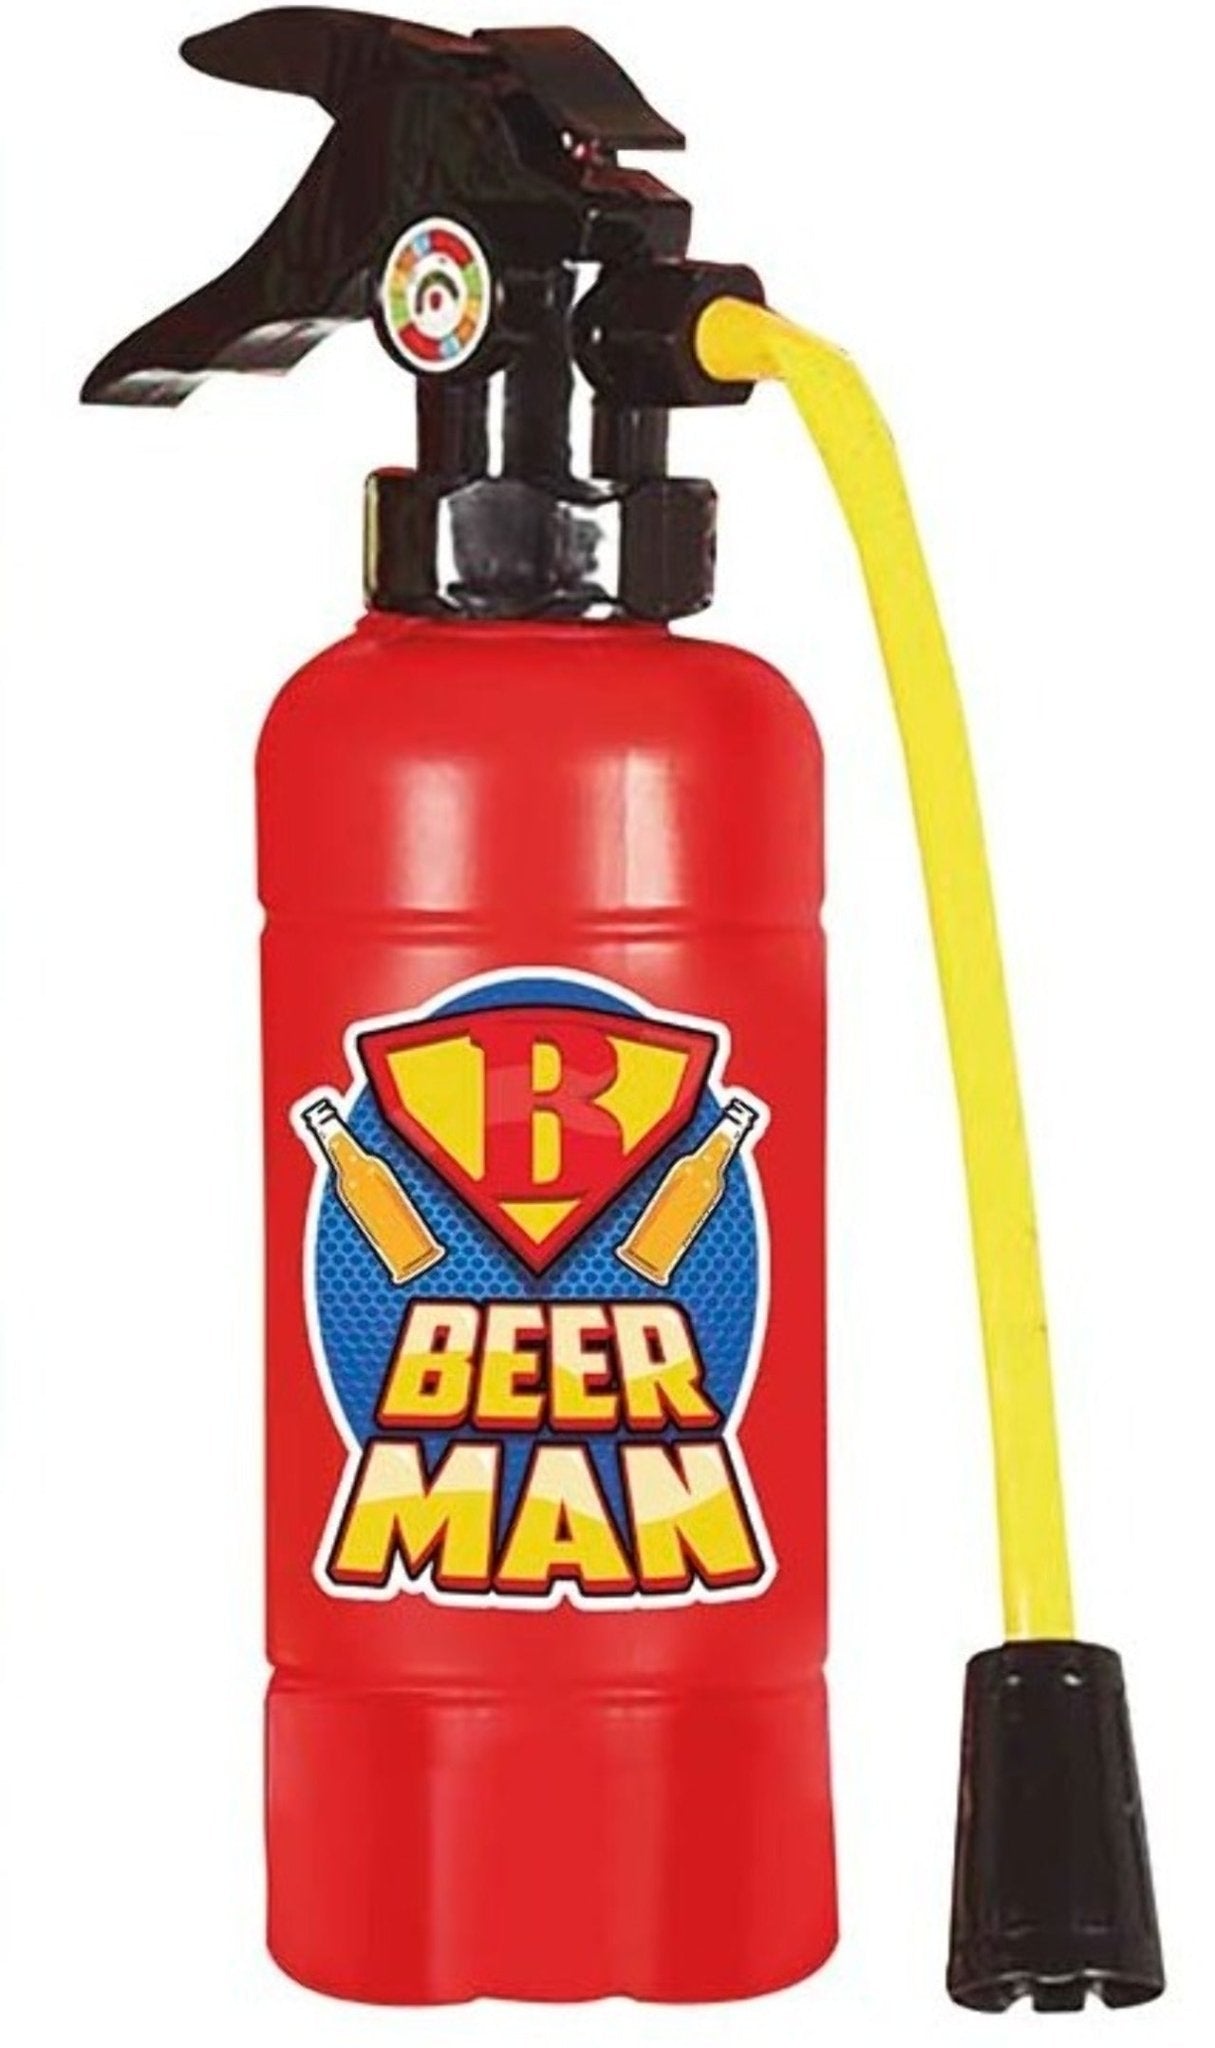 http://de.costumalia.com/cdn/shop/products/extintor-bebida-beerman-545498.jpg?v=1691656751